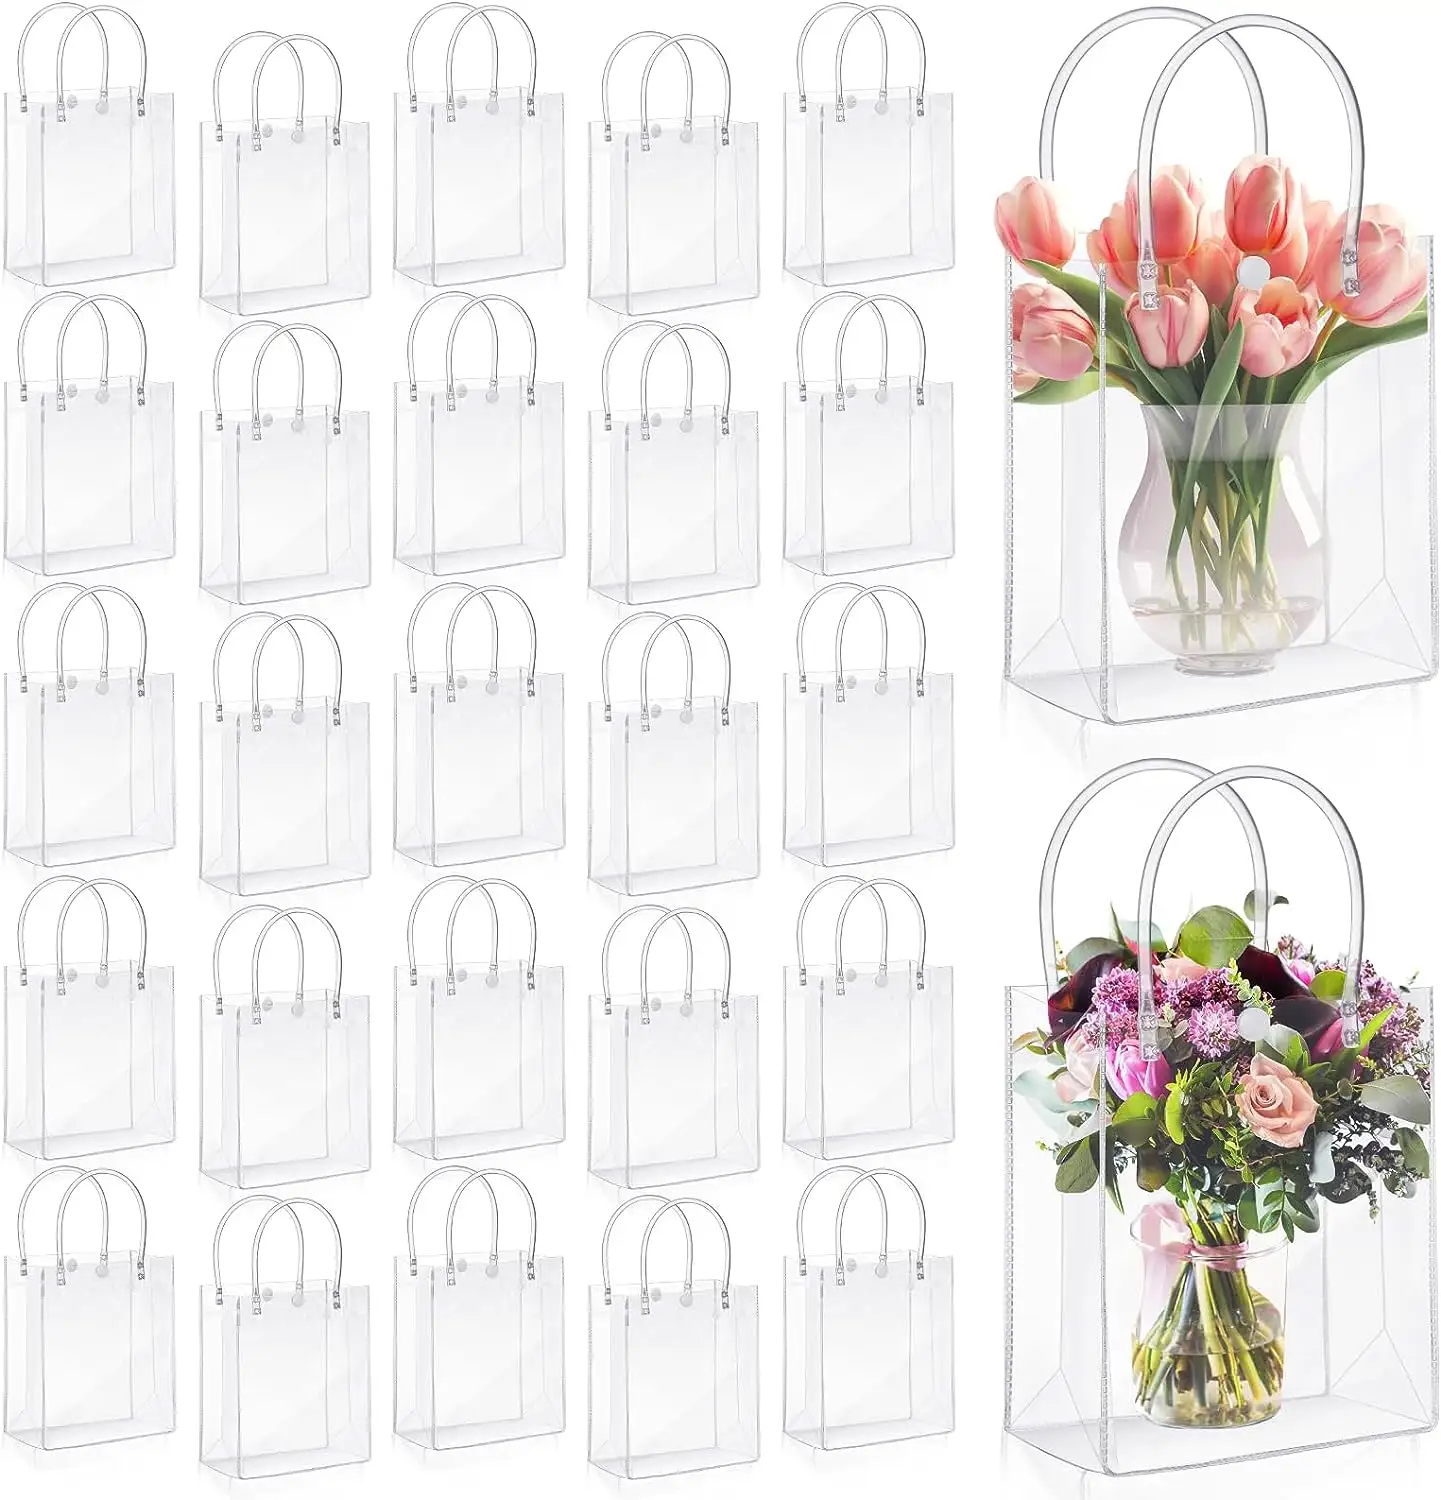 กระเป๋าโท้ทดอกไม้ใสแฟชั่นกระเป๋าบรรจุภัณฑ์ของขวัญกุหลาบถุงบรรจุภัณฑ์ของขวัญแต่งงานสำหรับช่อ